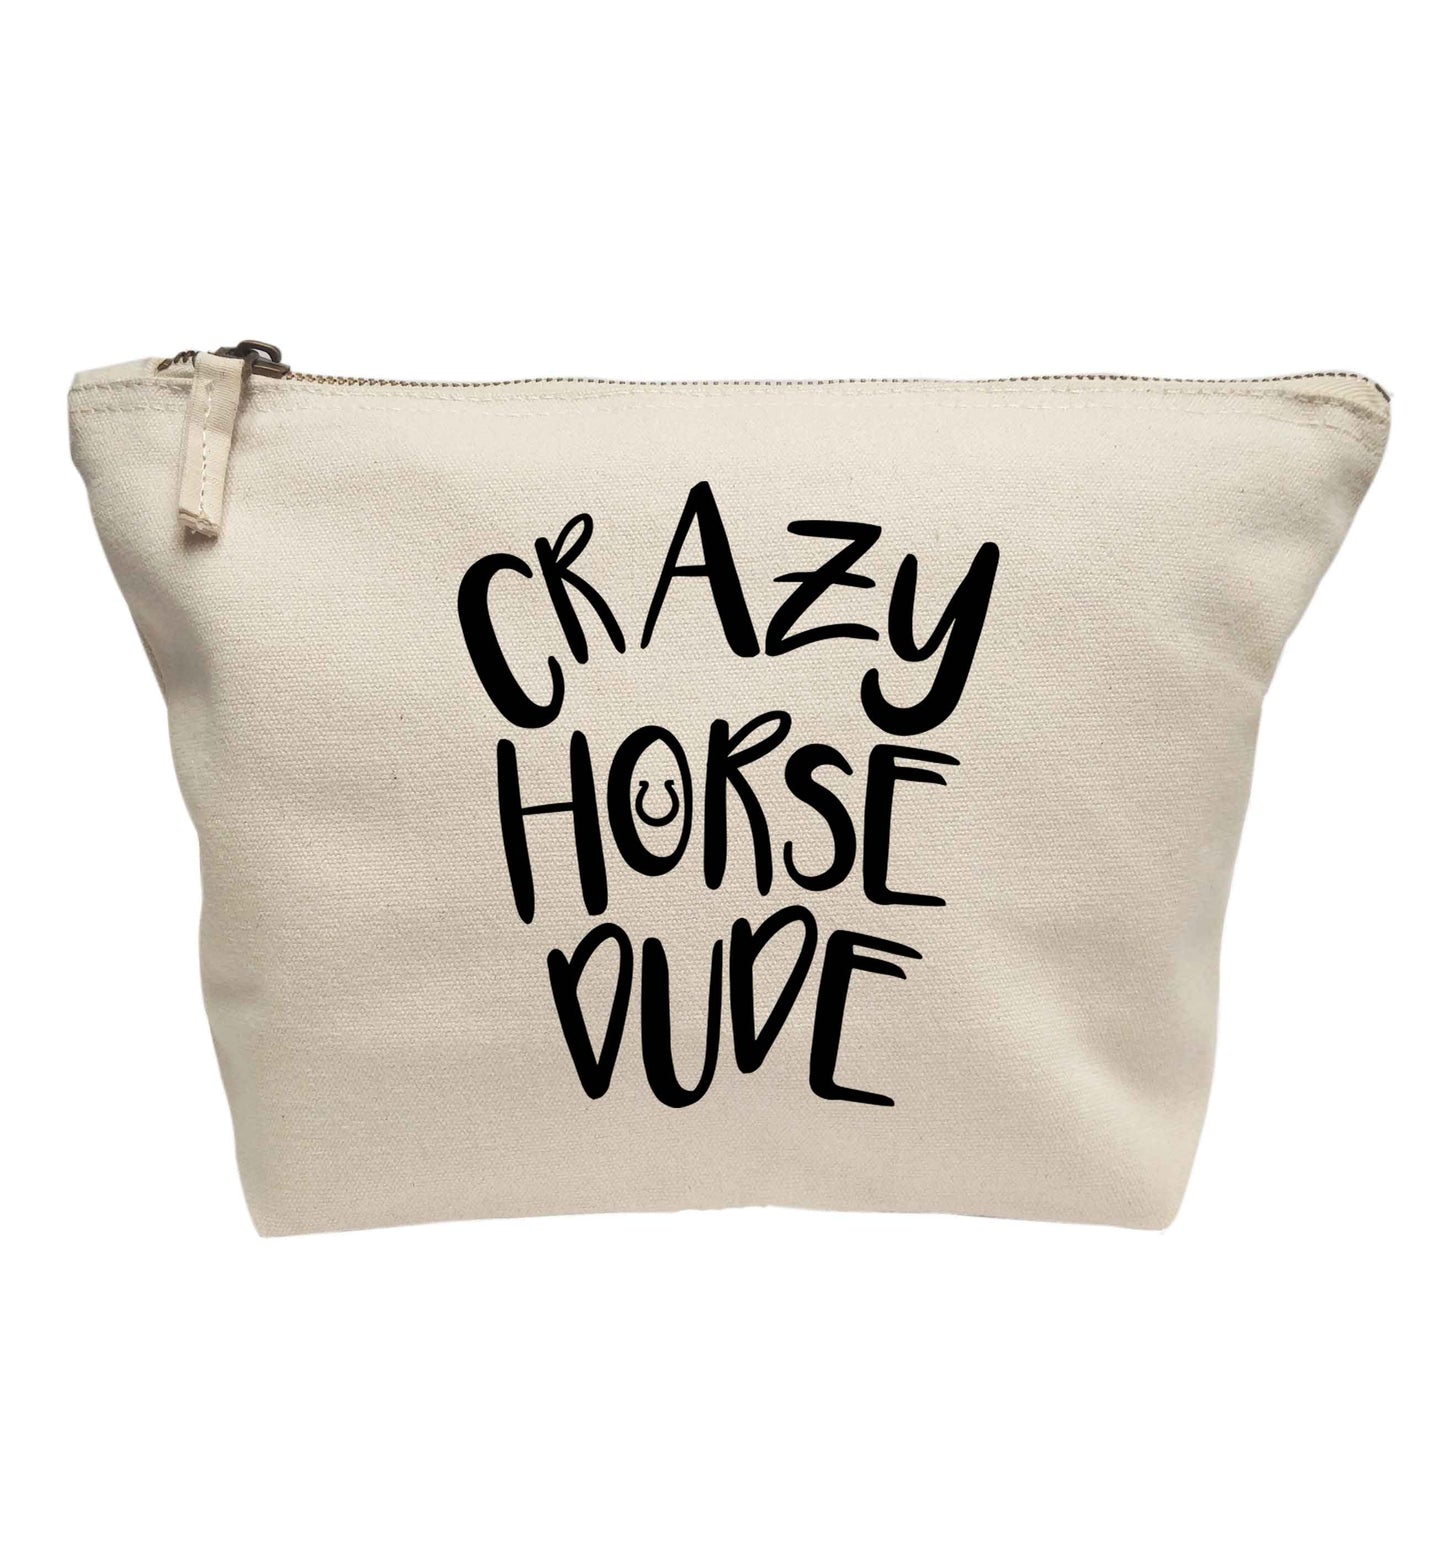 Crazy horse dude | Makeup / wash bag